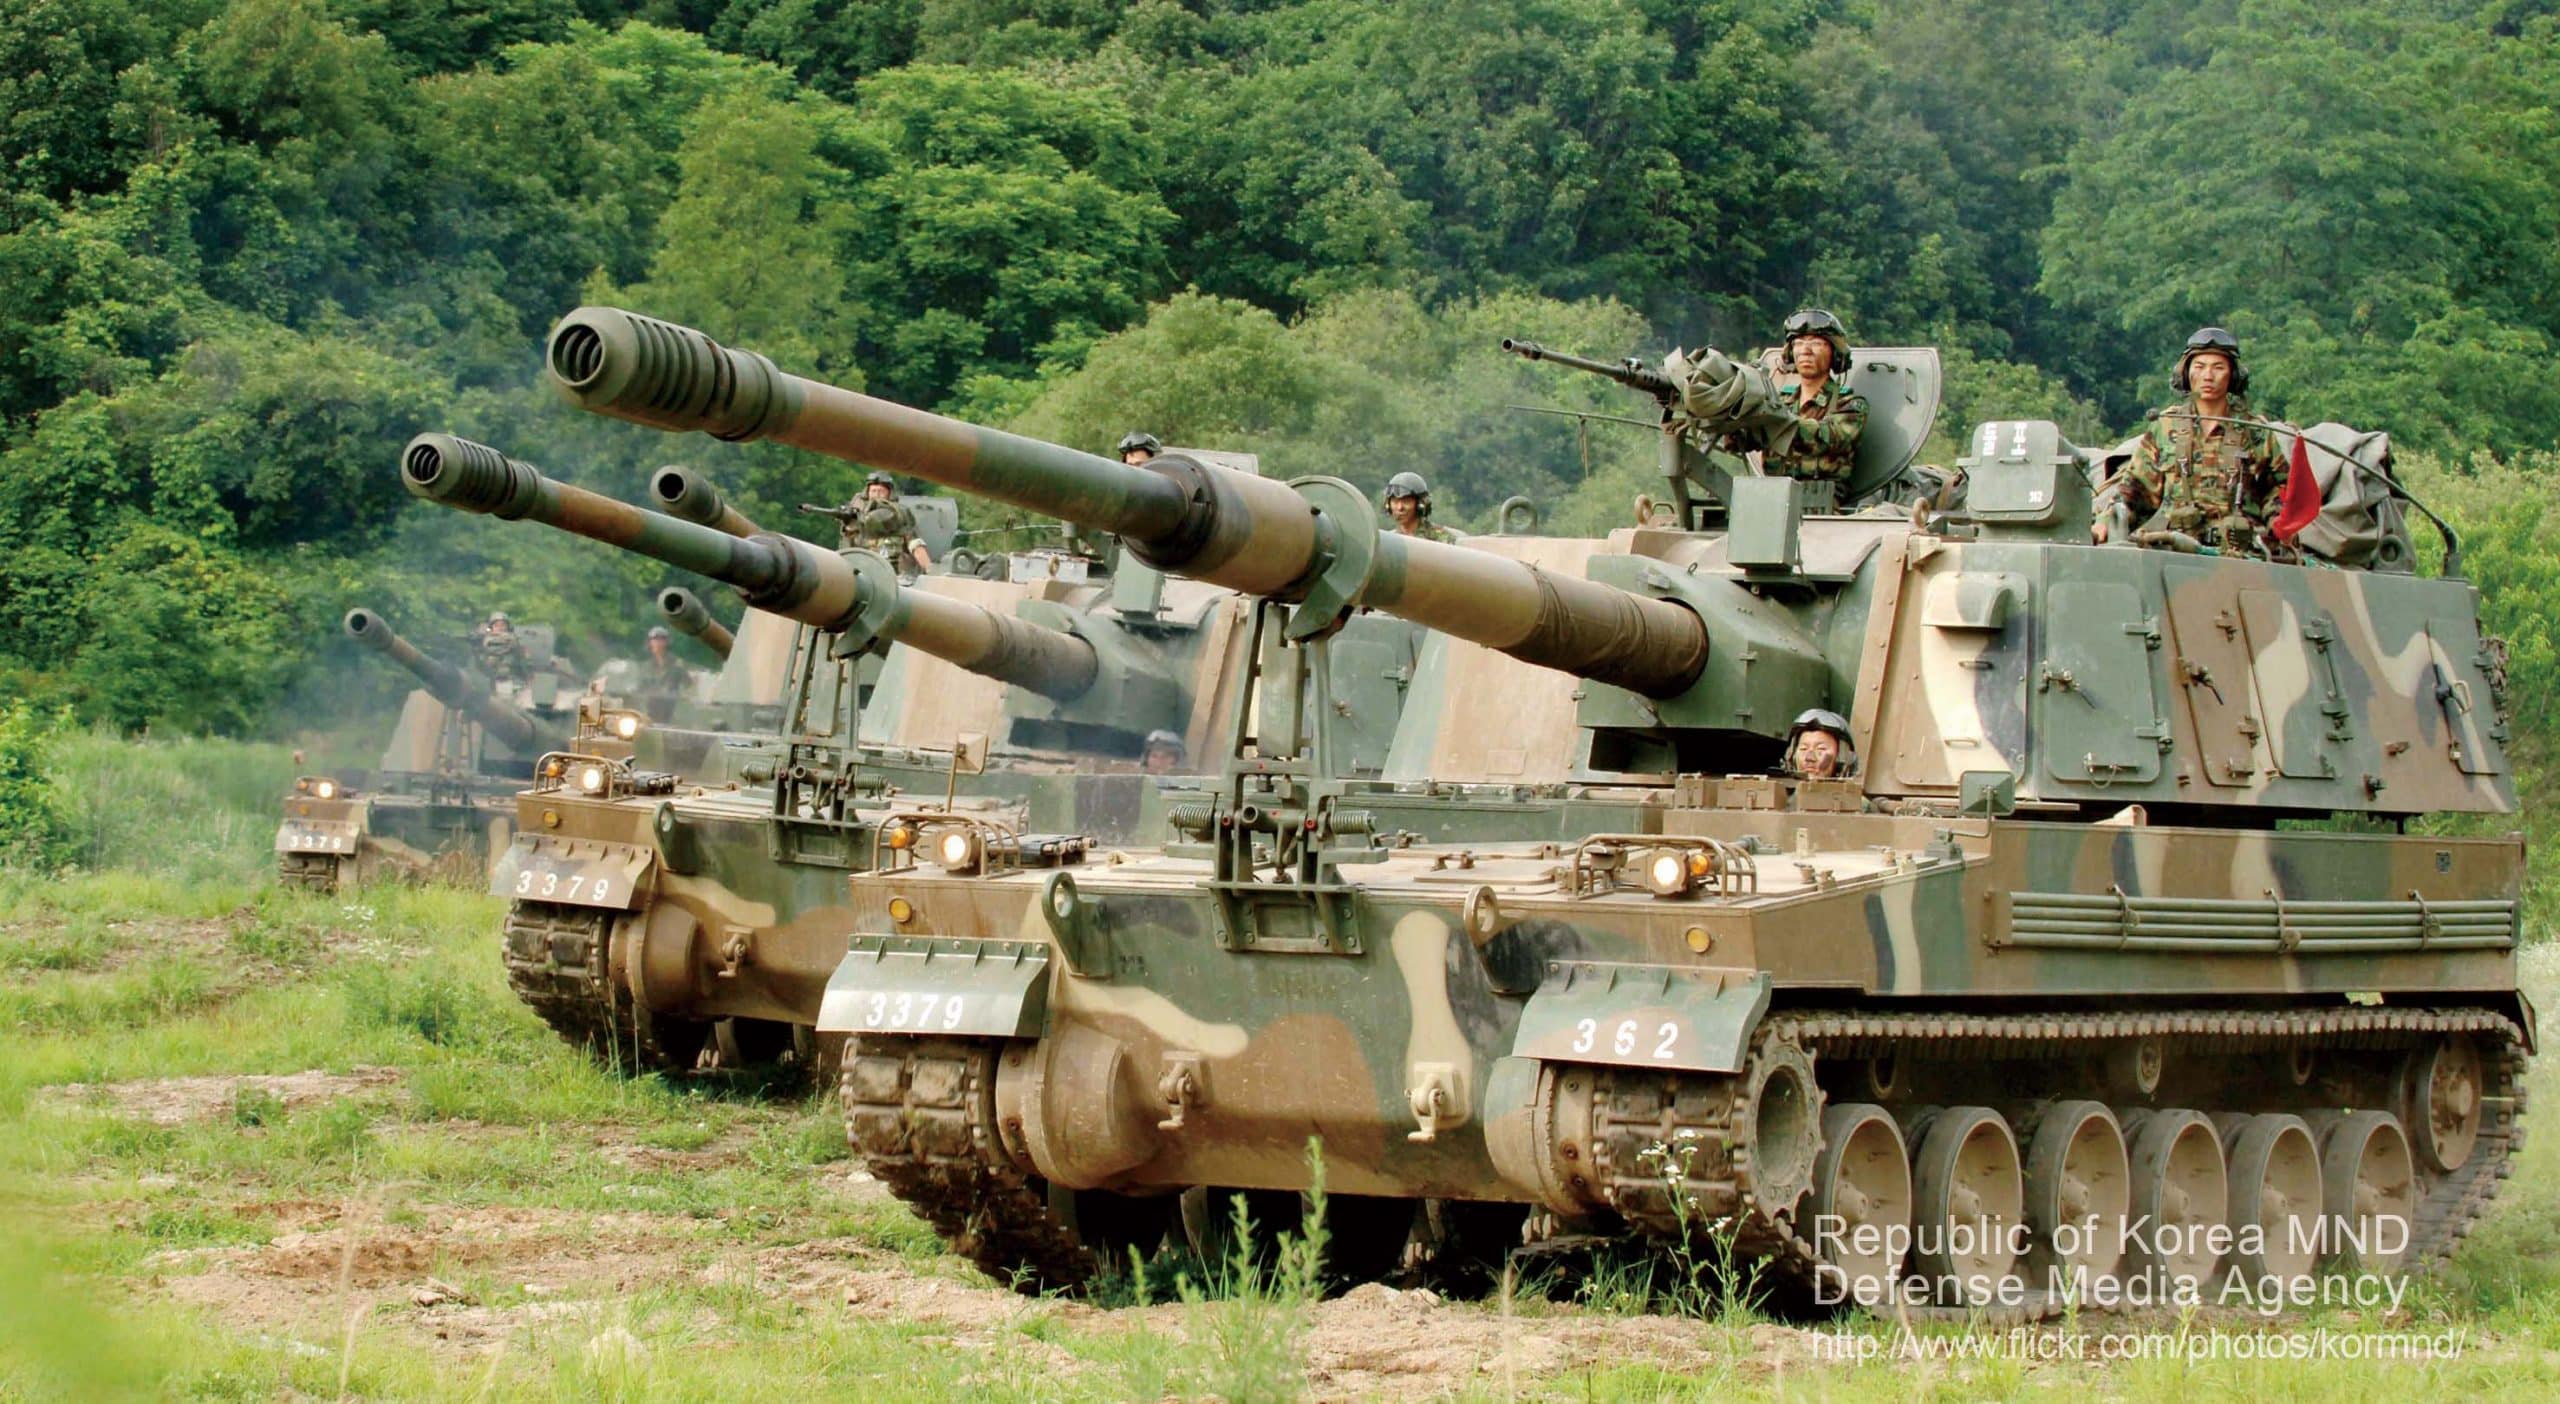 مصر قد توقع قريبًا اتفاقية للحصول على مدافع هاوتزر K9 155 ملم من كوريا الجنوبية